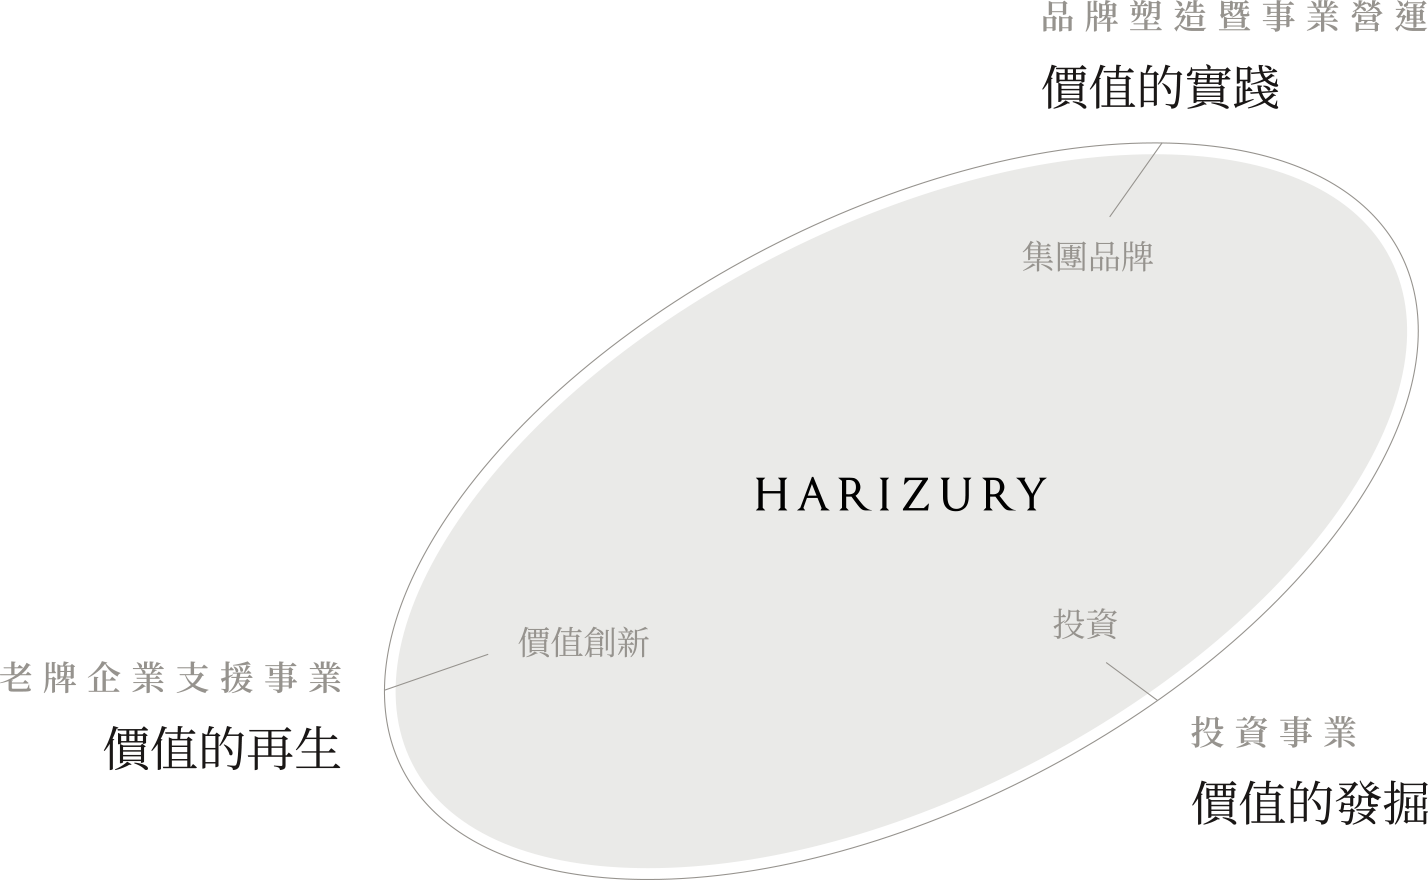 HARIZURY 老牌企業支援事業(價值的再生) 投資事業(價值的發掘) 品牌塑造暨事業營運(價值的實踐)